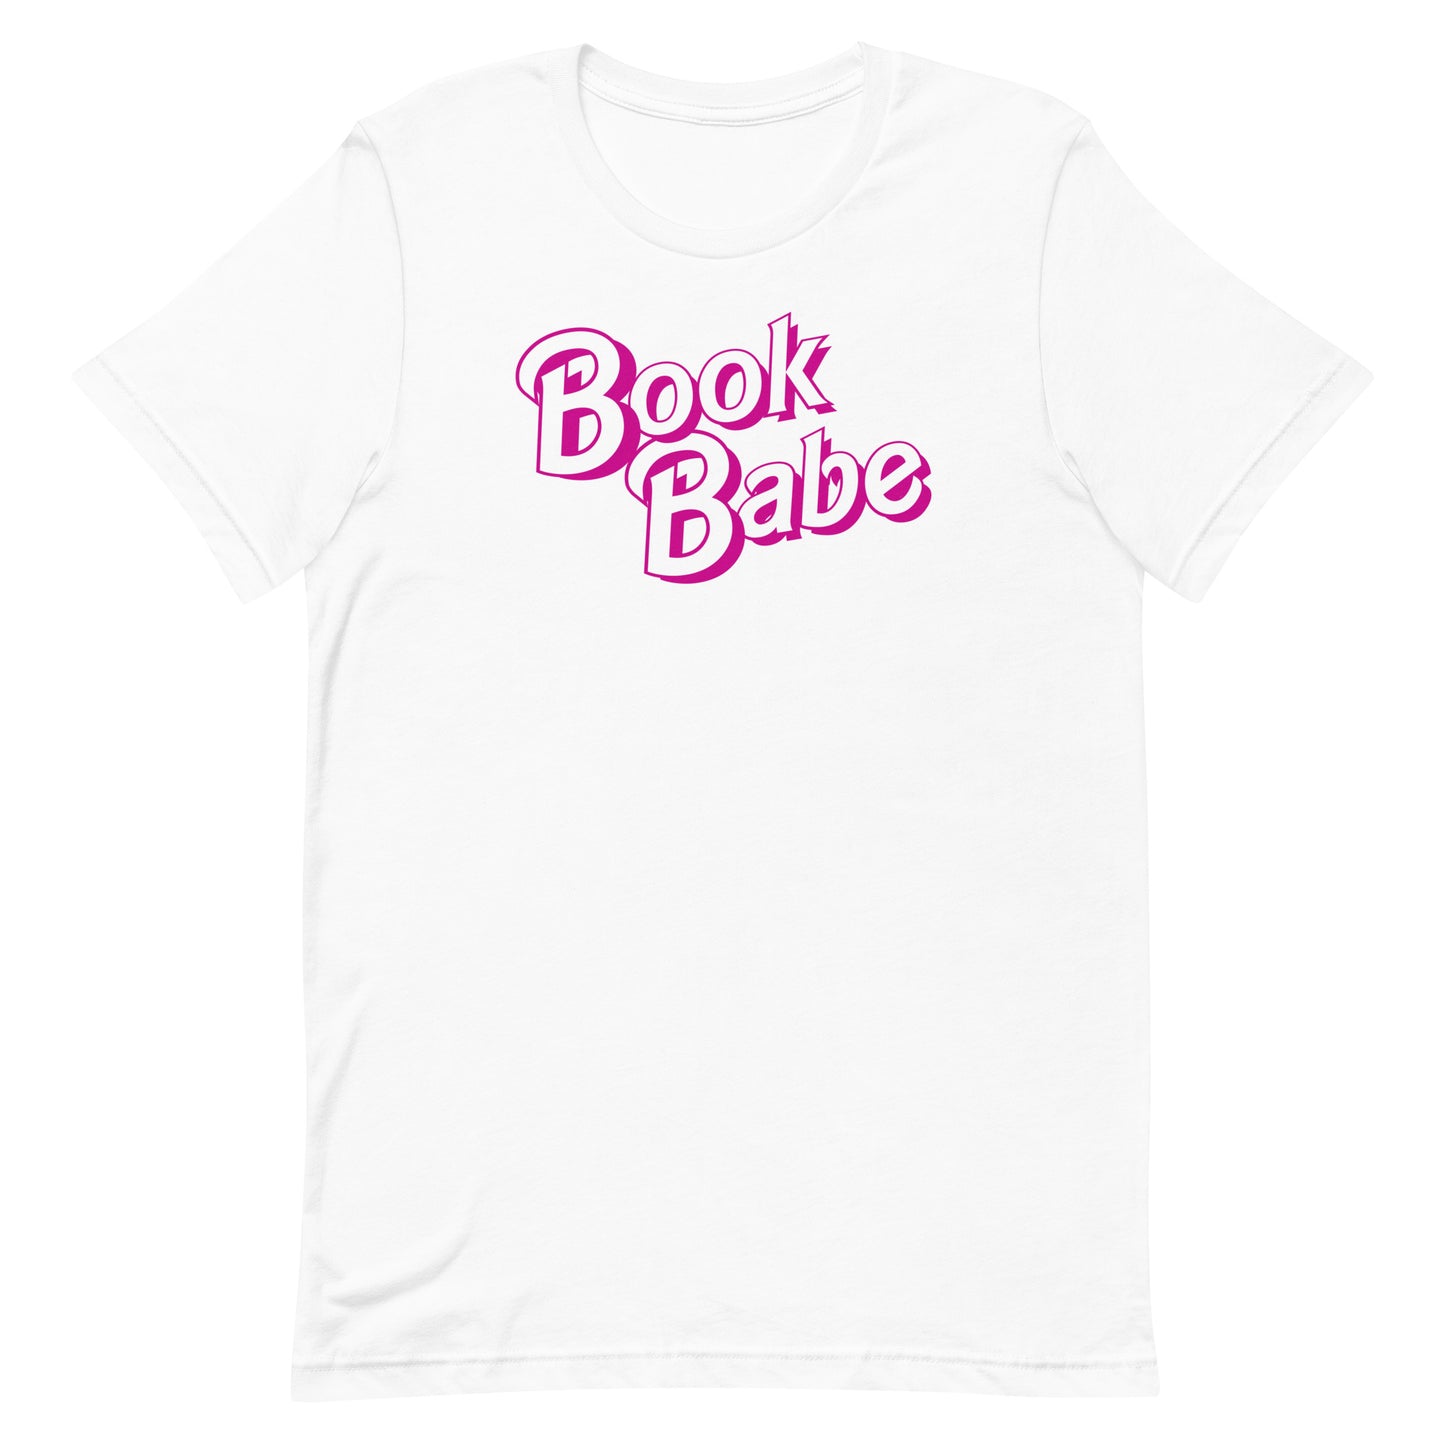 Book Babe Barbie Tee Shirt